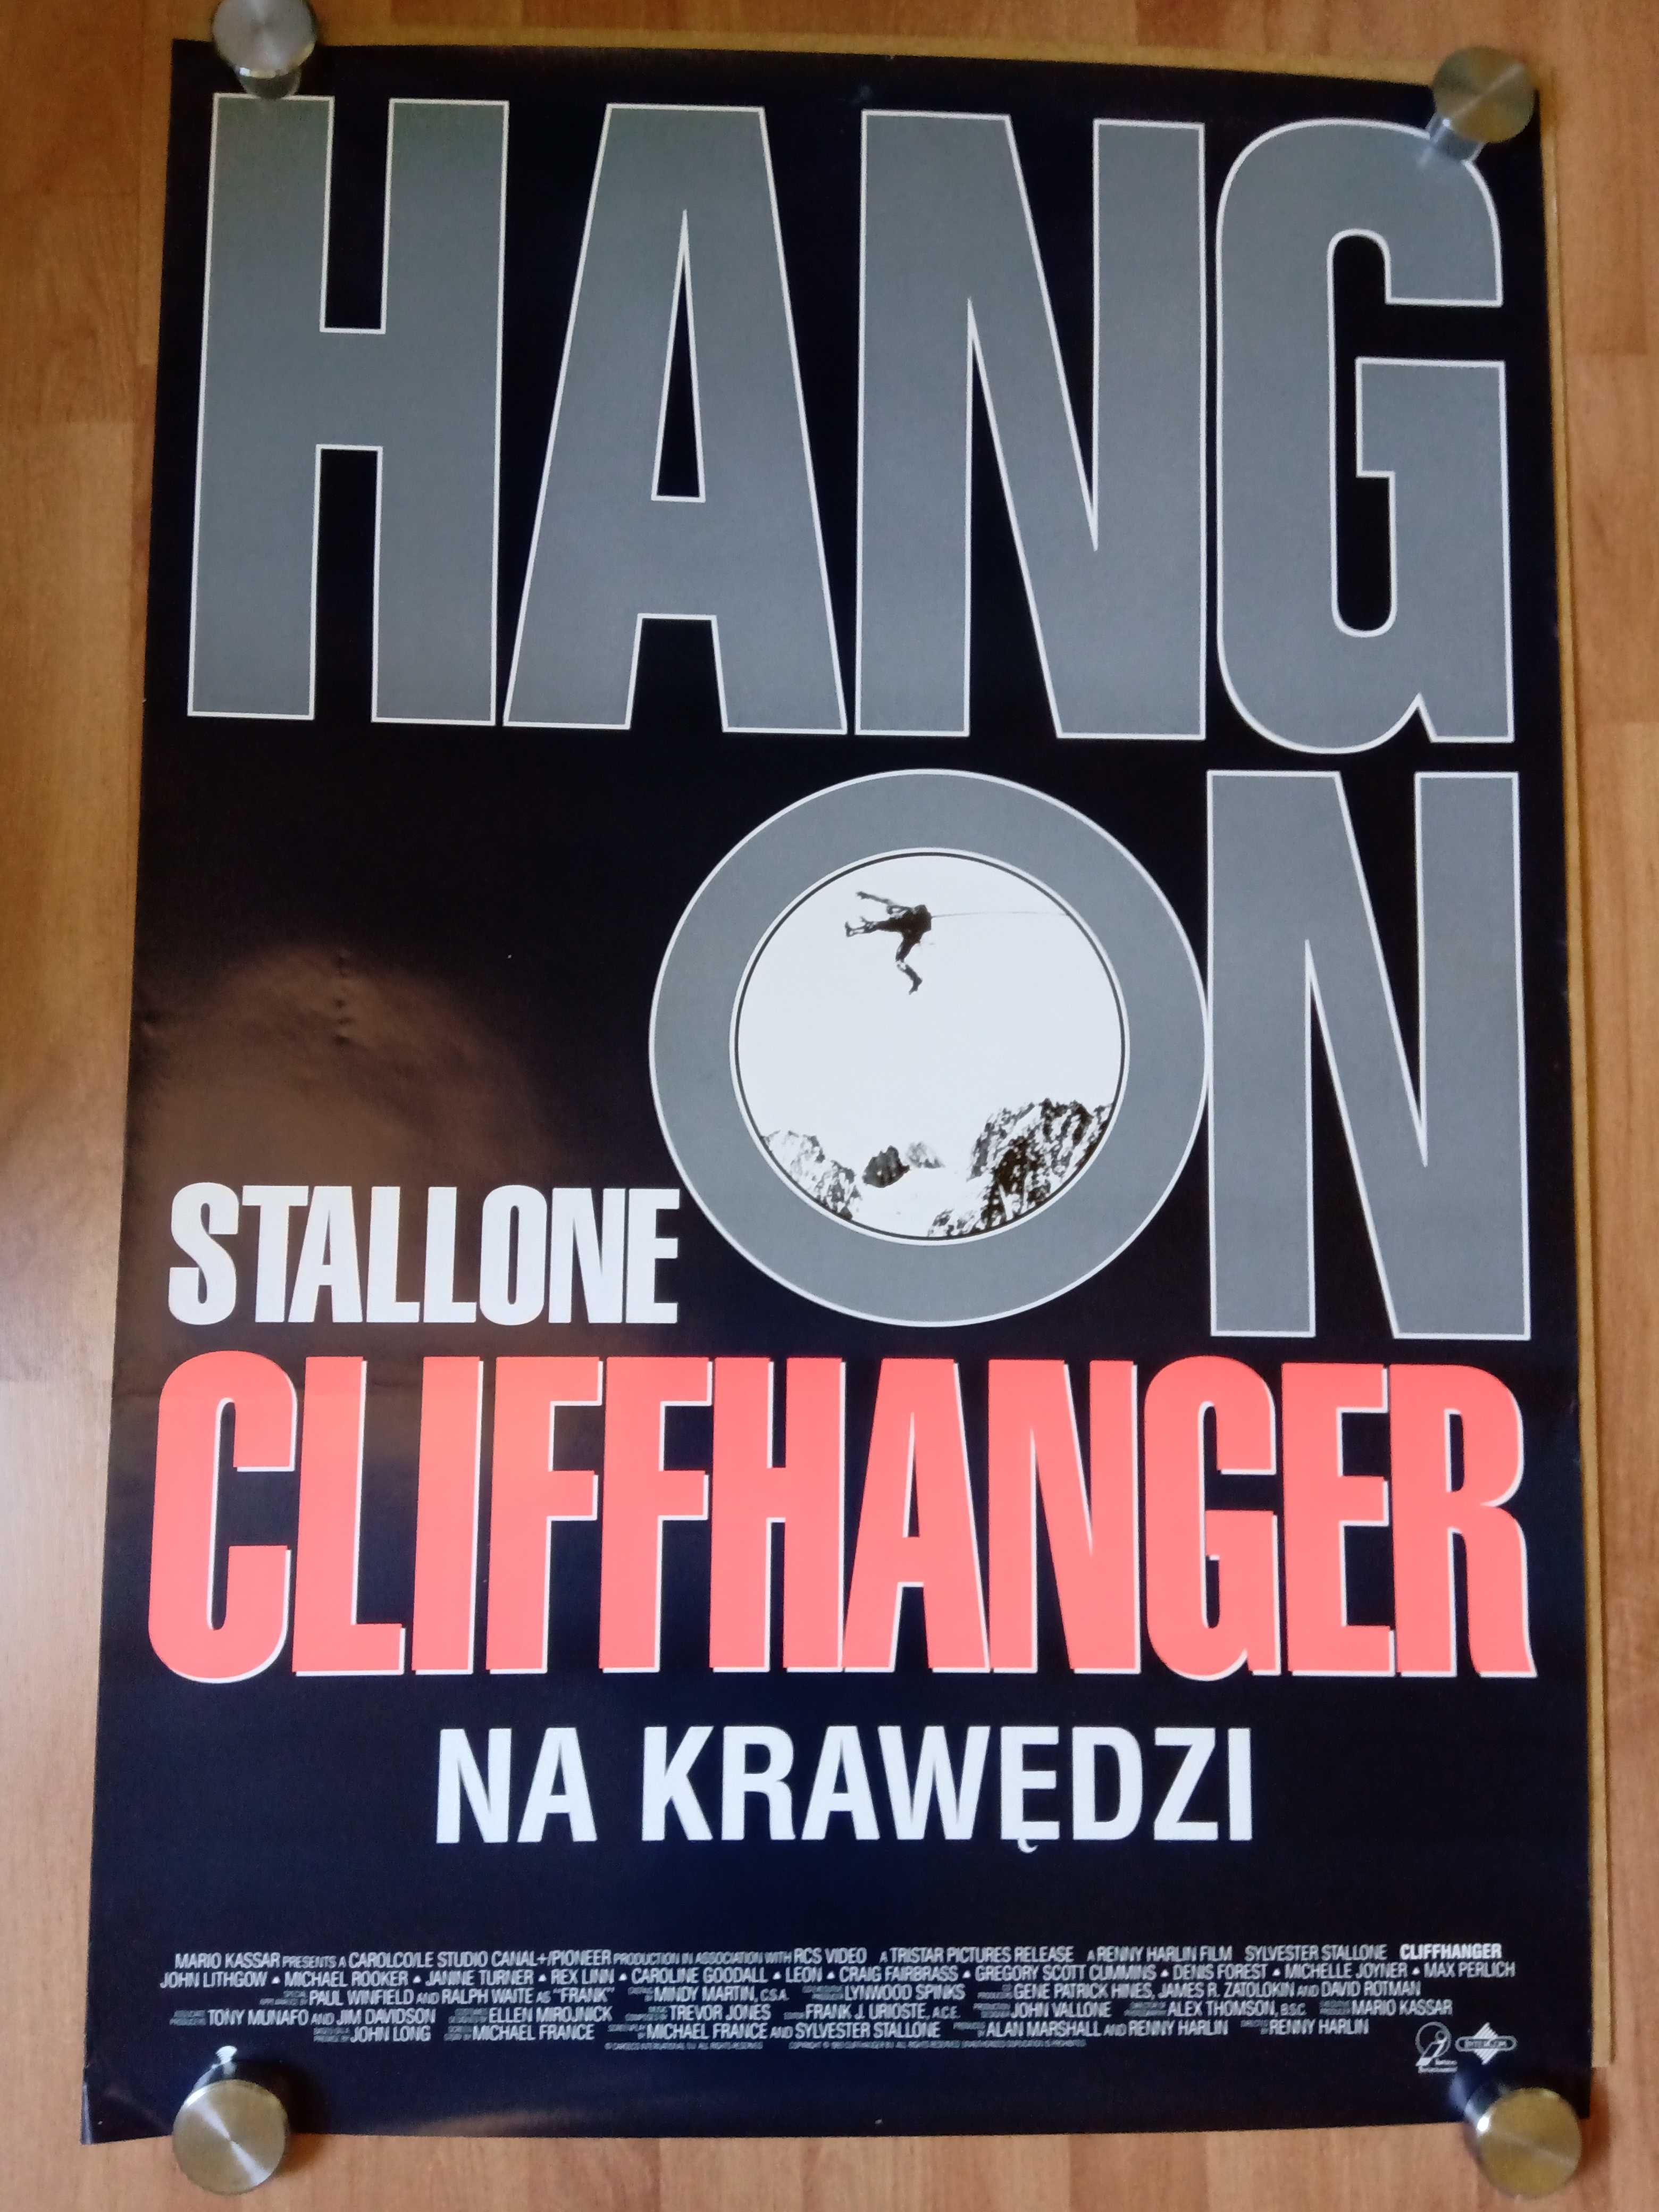 CLIFFHANGER Sylvester Stallone Oryginalny plakat filmowy z 1993 roku.